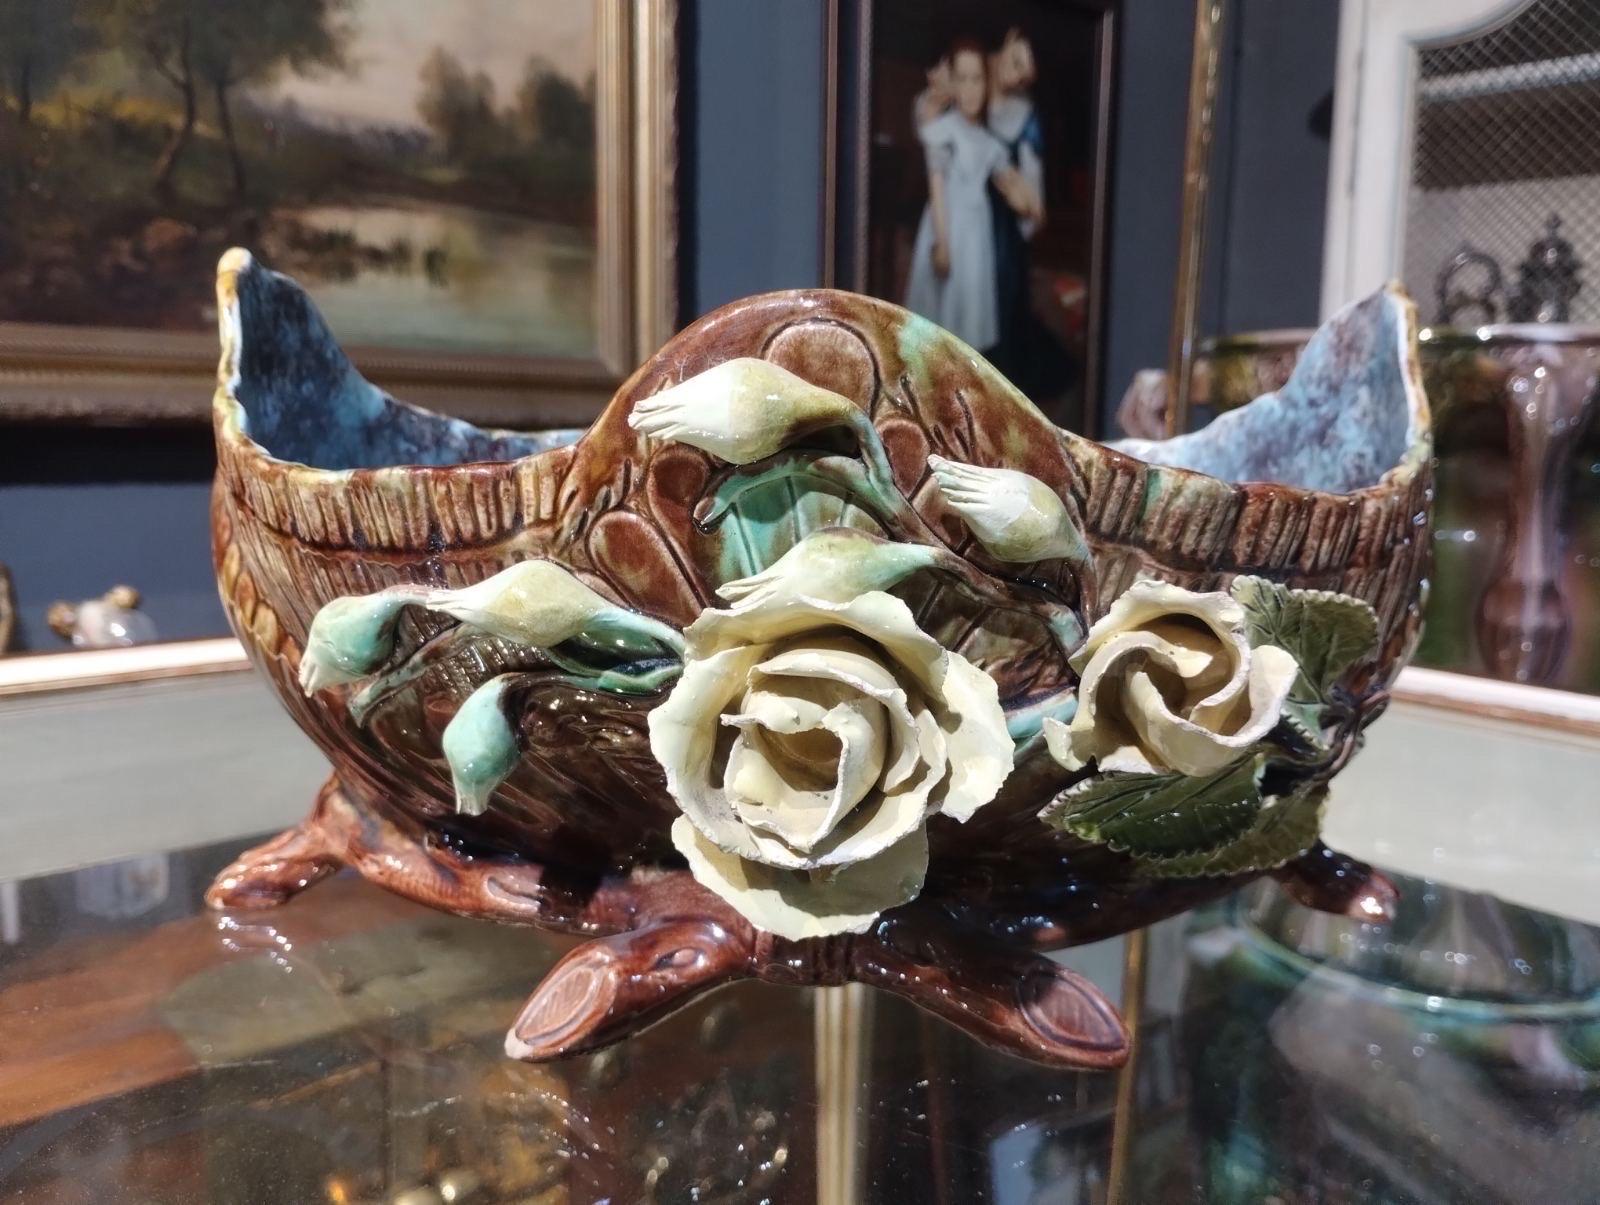 Hübsche französische, handbemalte Barbotine-Schale aus Keramik mit exquisitem Blumendekor in natürlichen Farben. Guter Originalzustand ohne Restaurierungen.
Frankreich, um 1900.